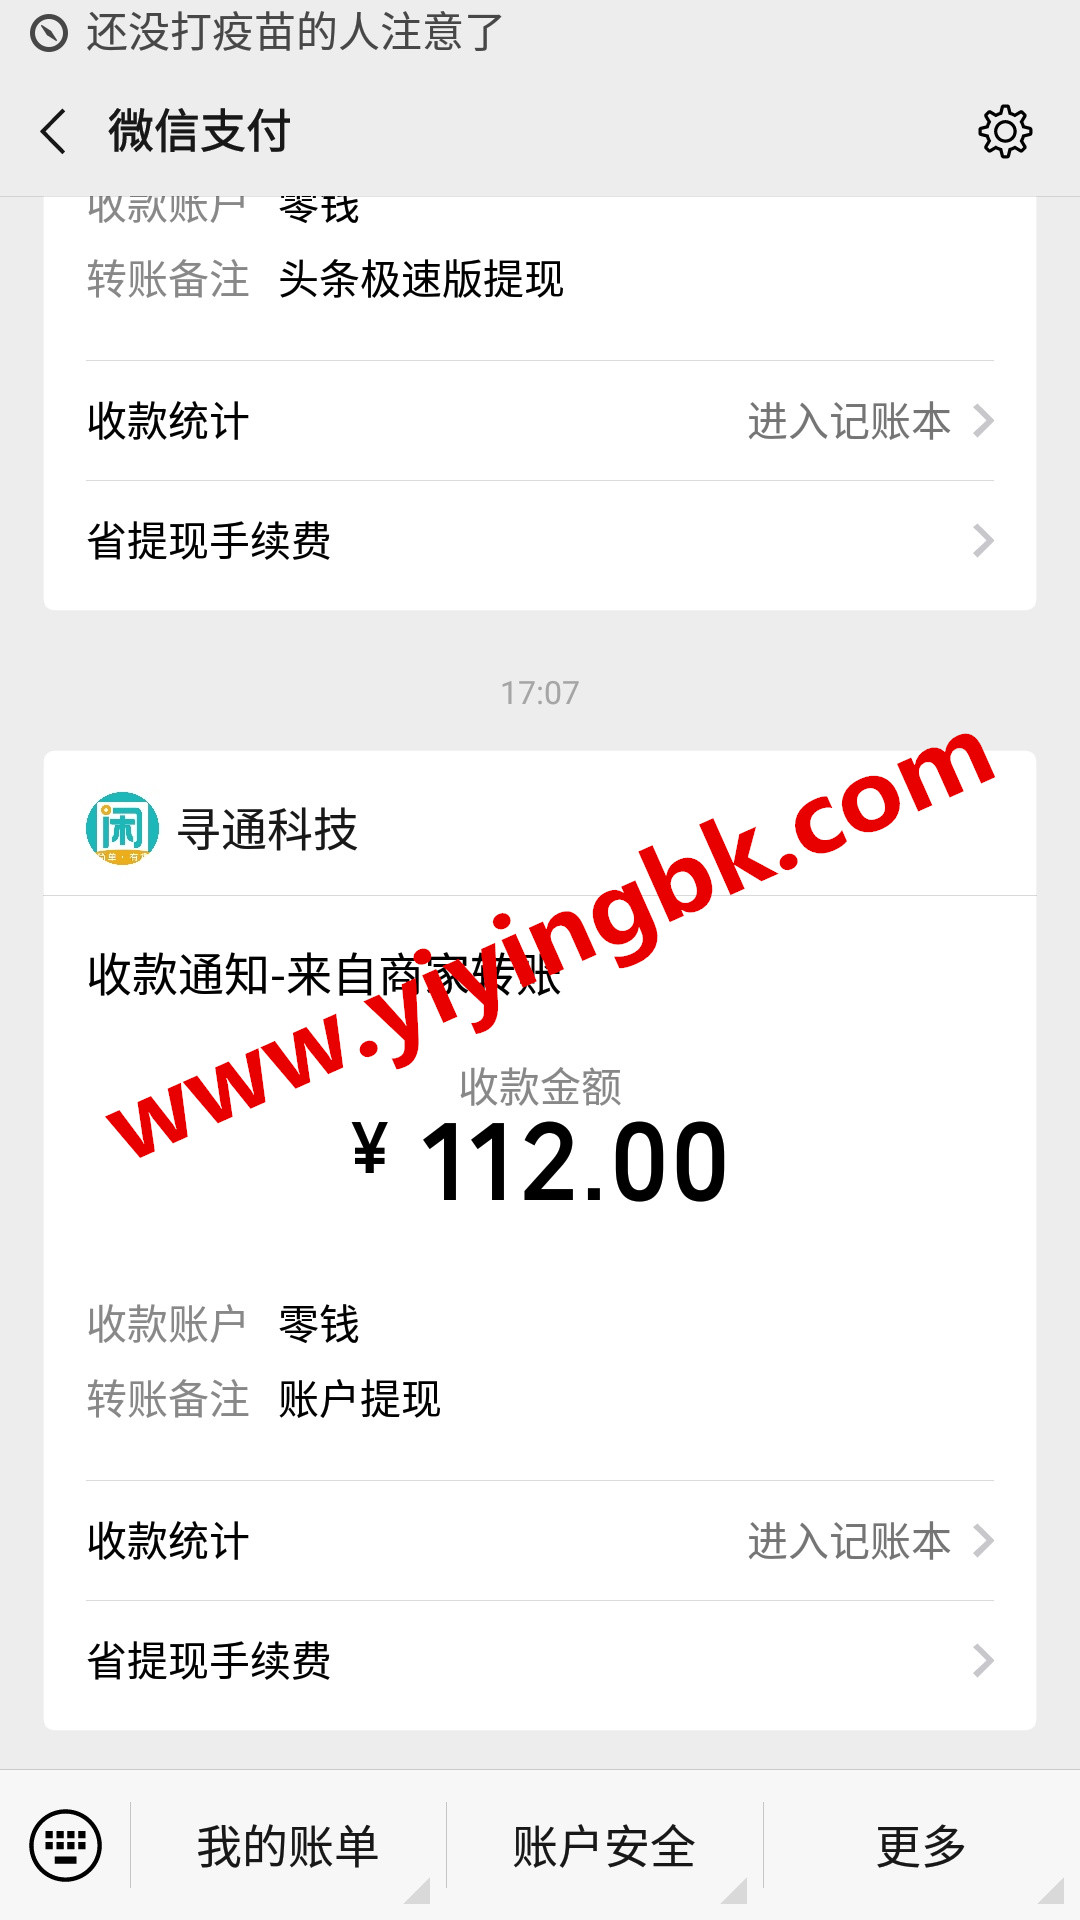 手机上免费兼职赚钱，微信提现112元红包真的到账了。www.yiyingbk.com